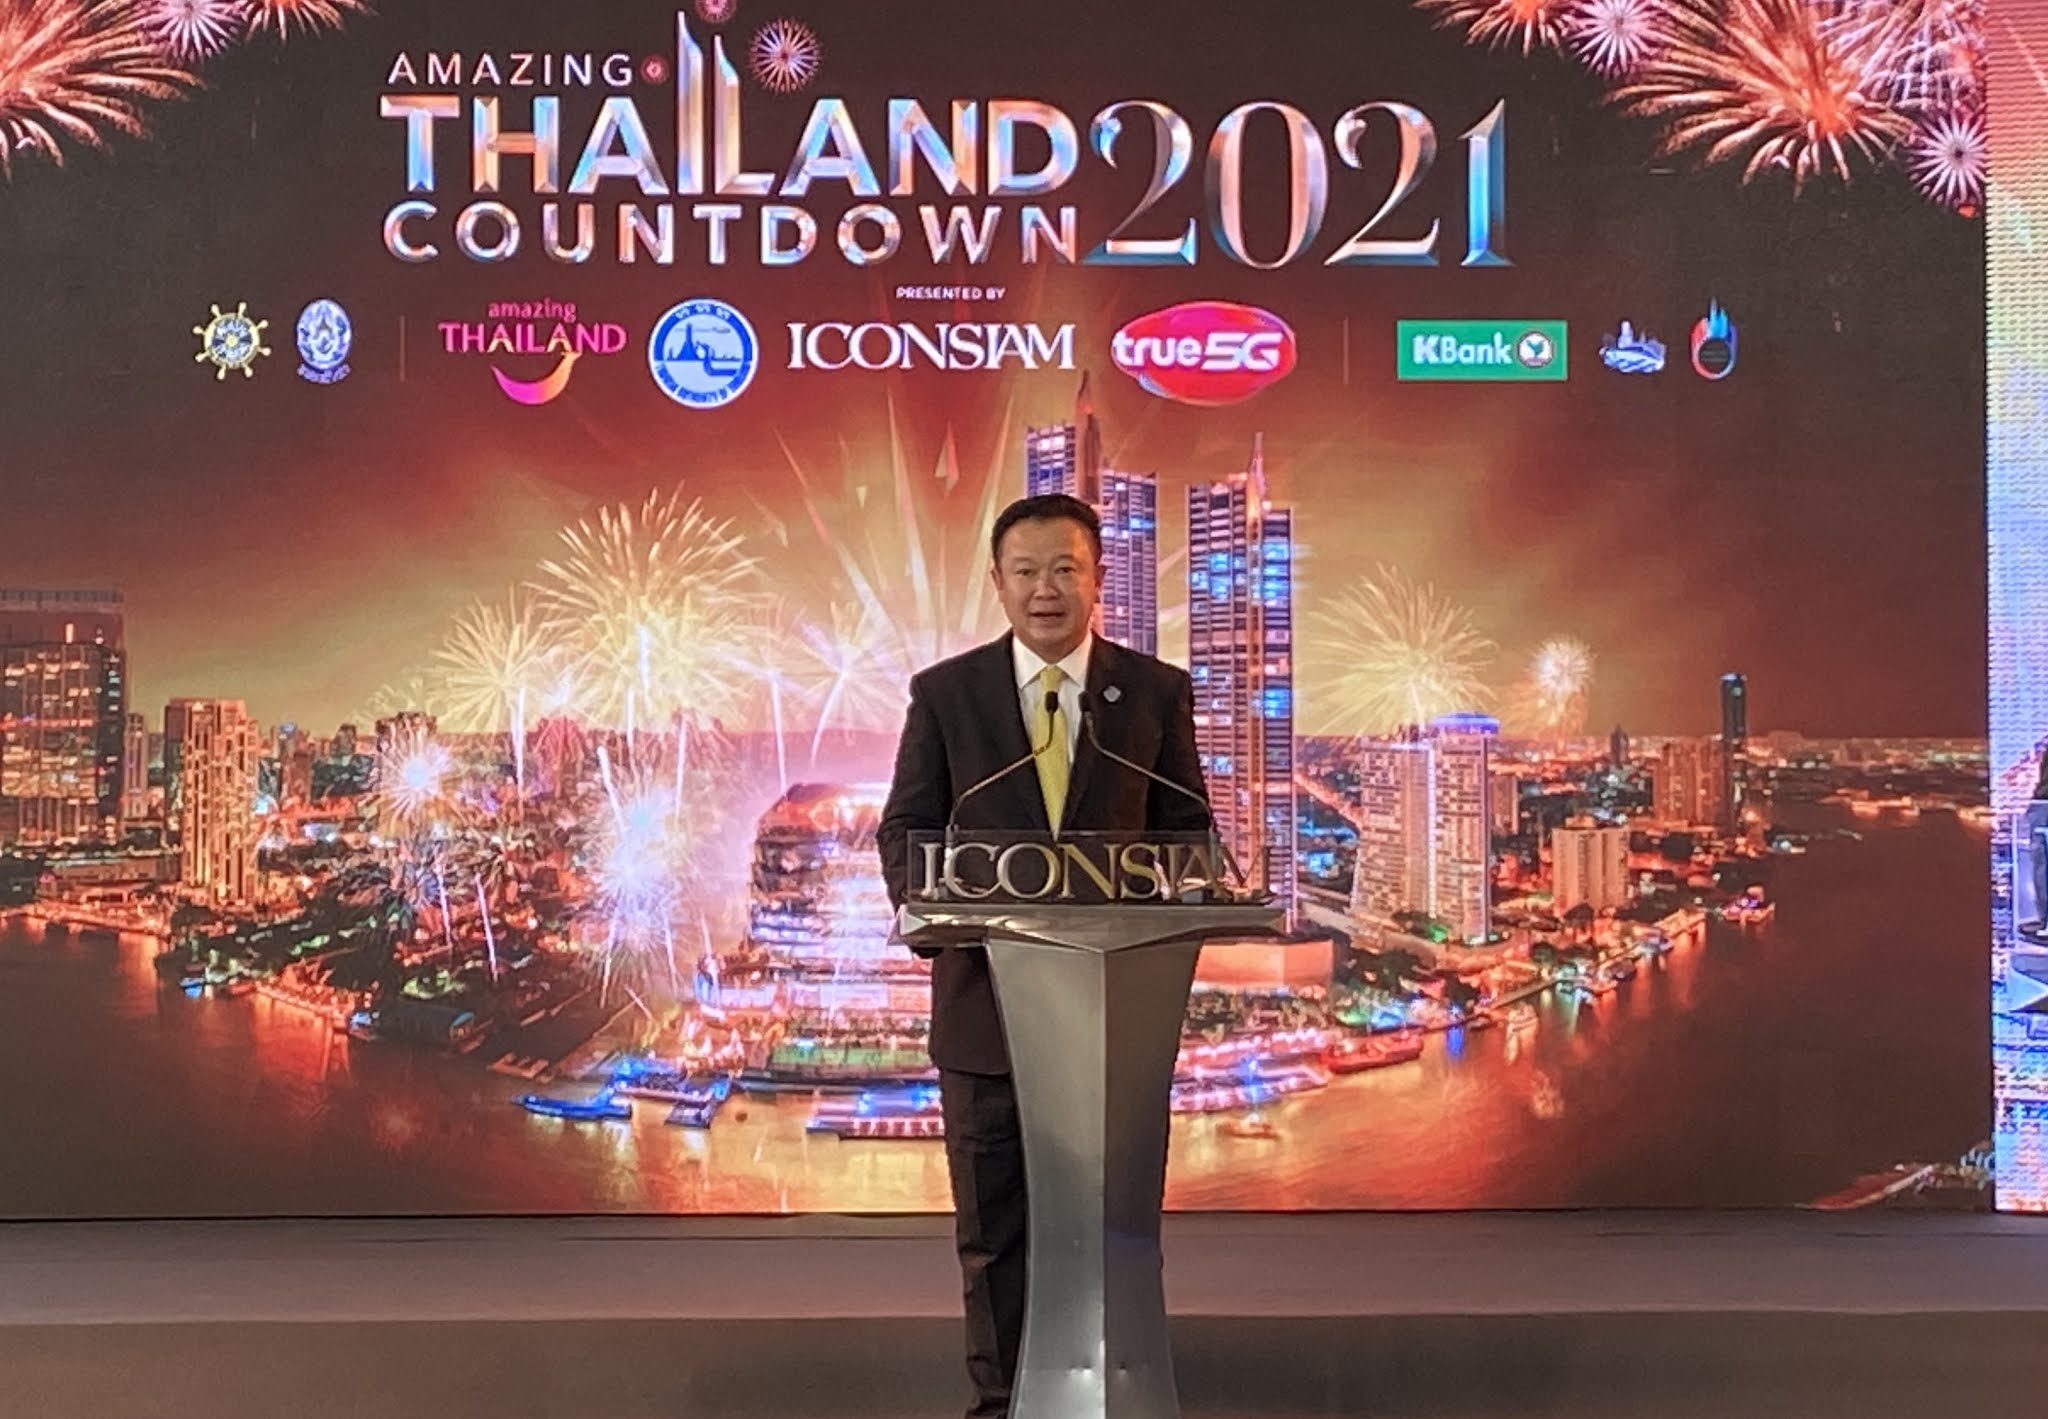 ‘การท่องเที่ยวแห่งประเทศไทย’ ร่วมกับ ‘ไอคอนสยาม’ และพันธมิตรสองฝั่งแม่น้ำเจ้าพระยา  รวมพลังหัวใจไทยสร้างมหาปรากฏการณ์ “Amazing Thailand Countdown 2021”